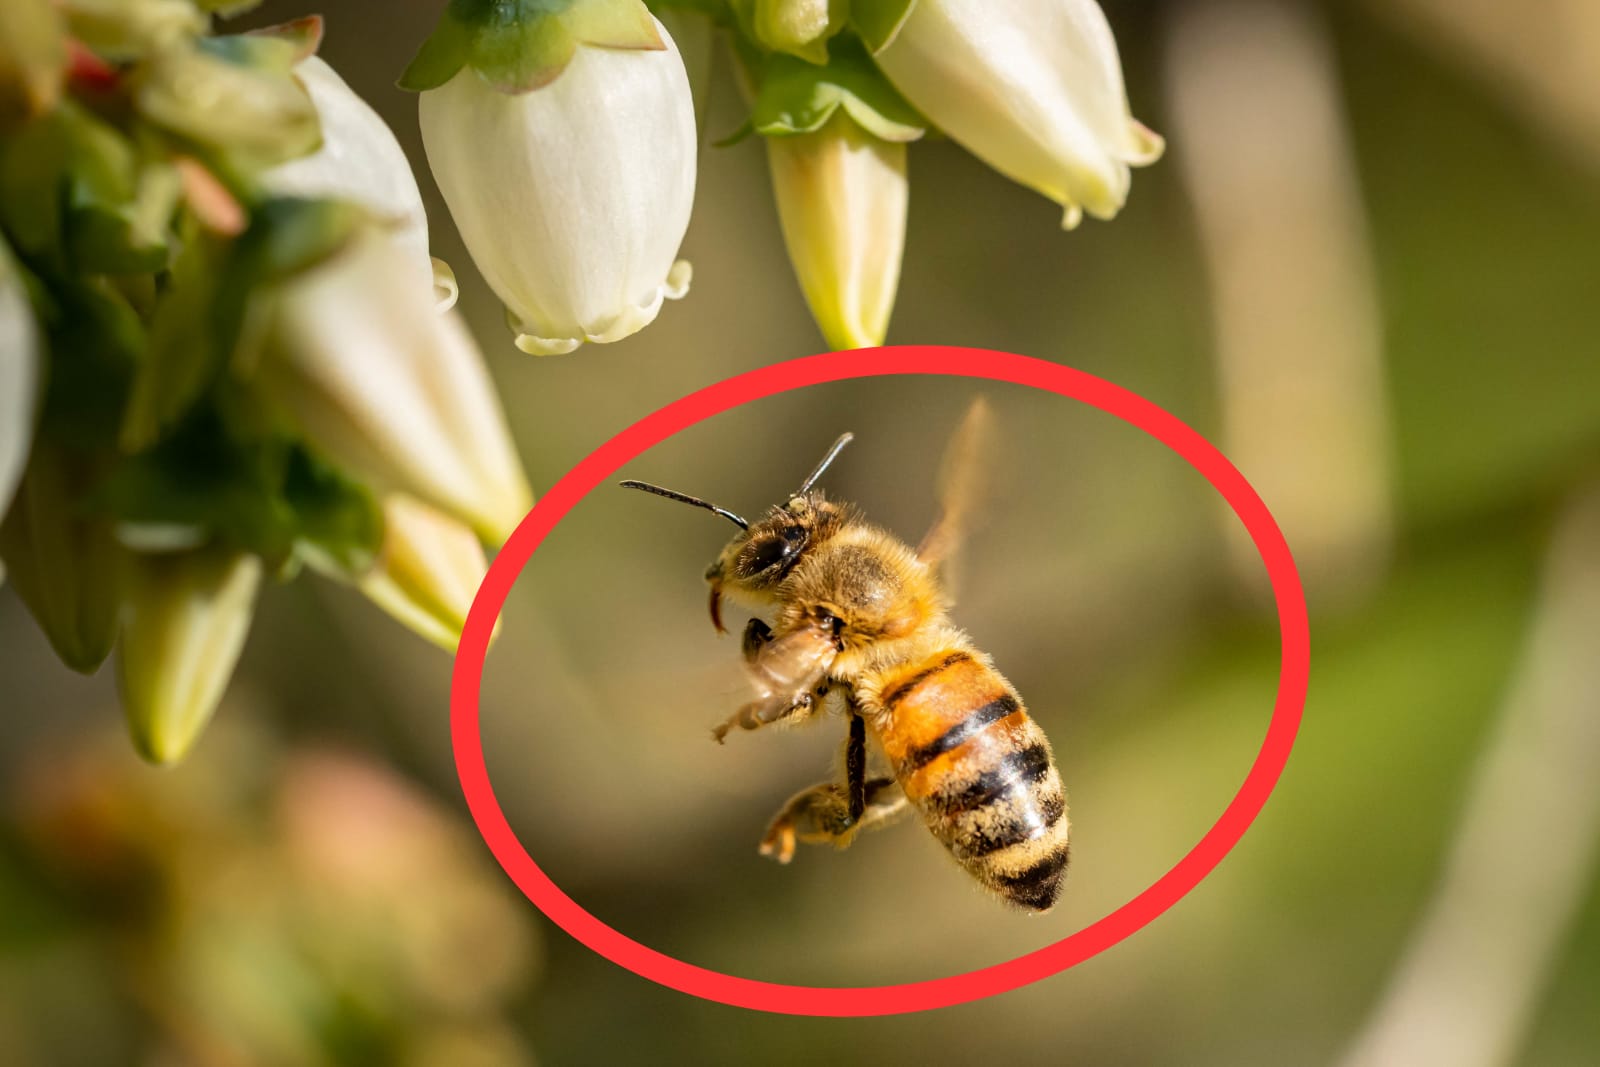 Sering Terlihat di Lingkungan, Ternyata Ini 6 Manfaat Lebah yang Harus Kamu Ketahui